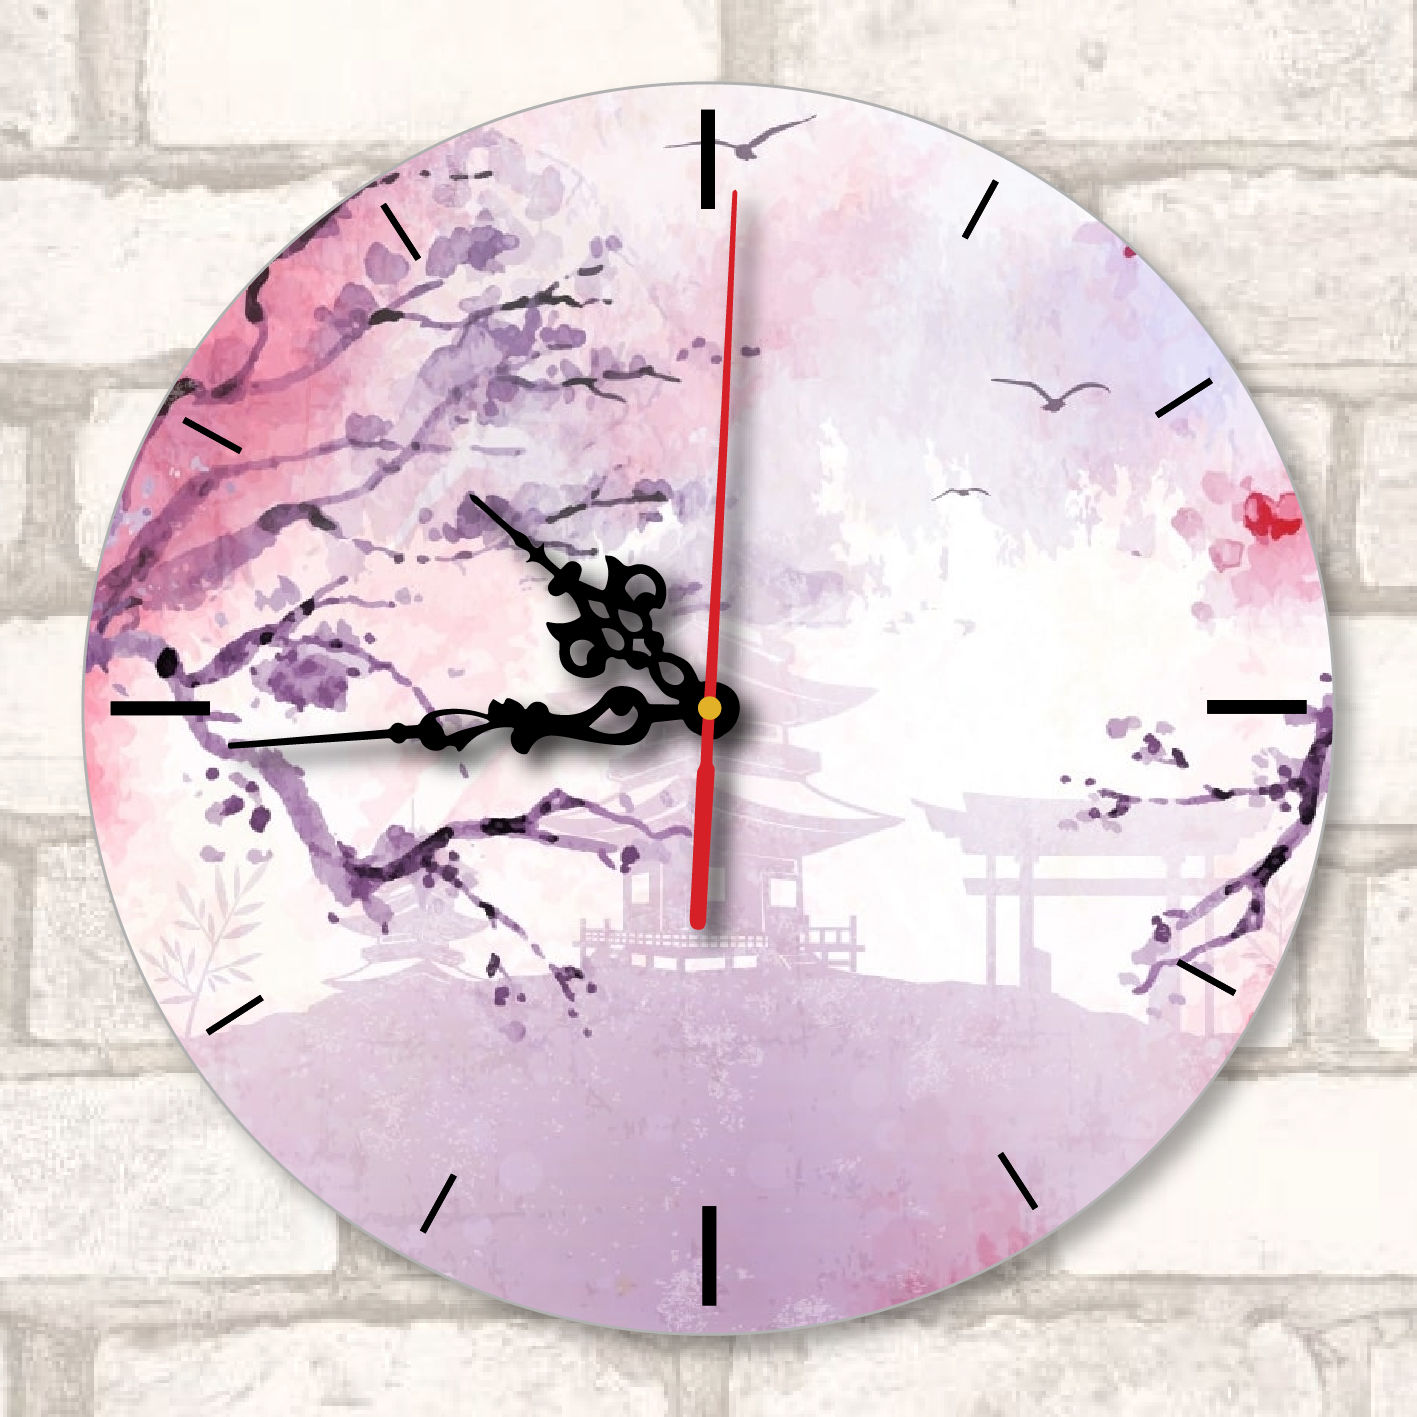 Impression sur horloge murale ronde avec aiguilles noires (24 cm)